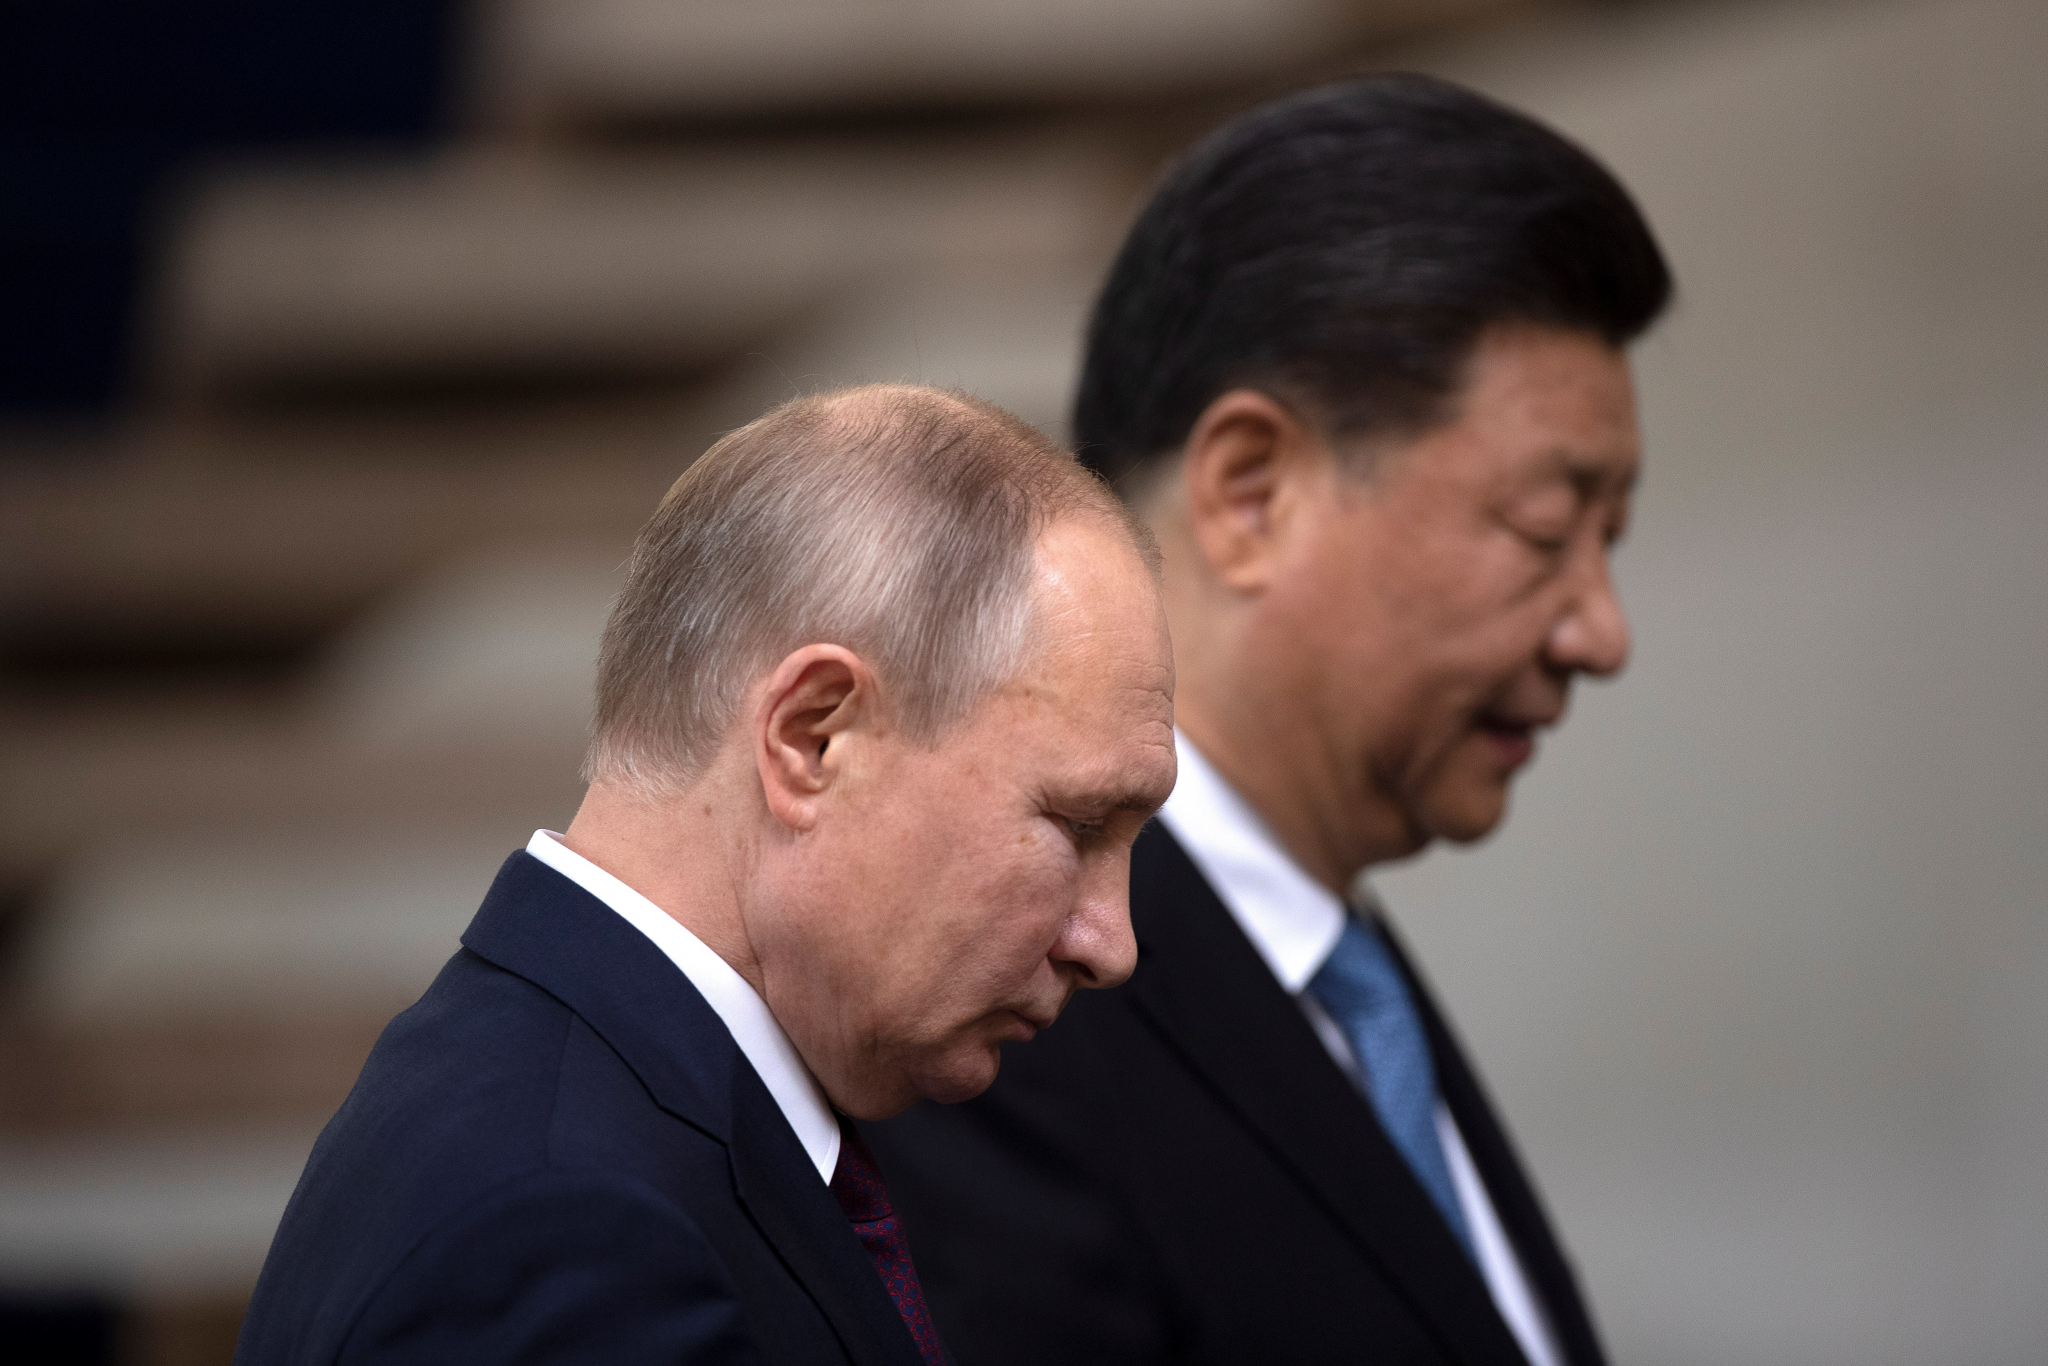 DVE SILE SVE BLIŽE JEDNA DRUGOJ Rusi i Kinezi su umorni od američke hegemonije